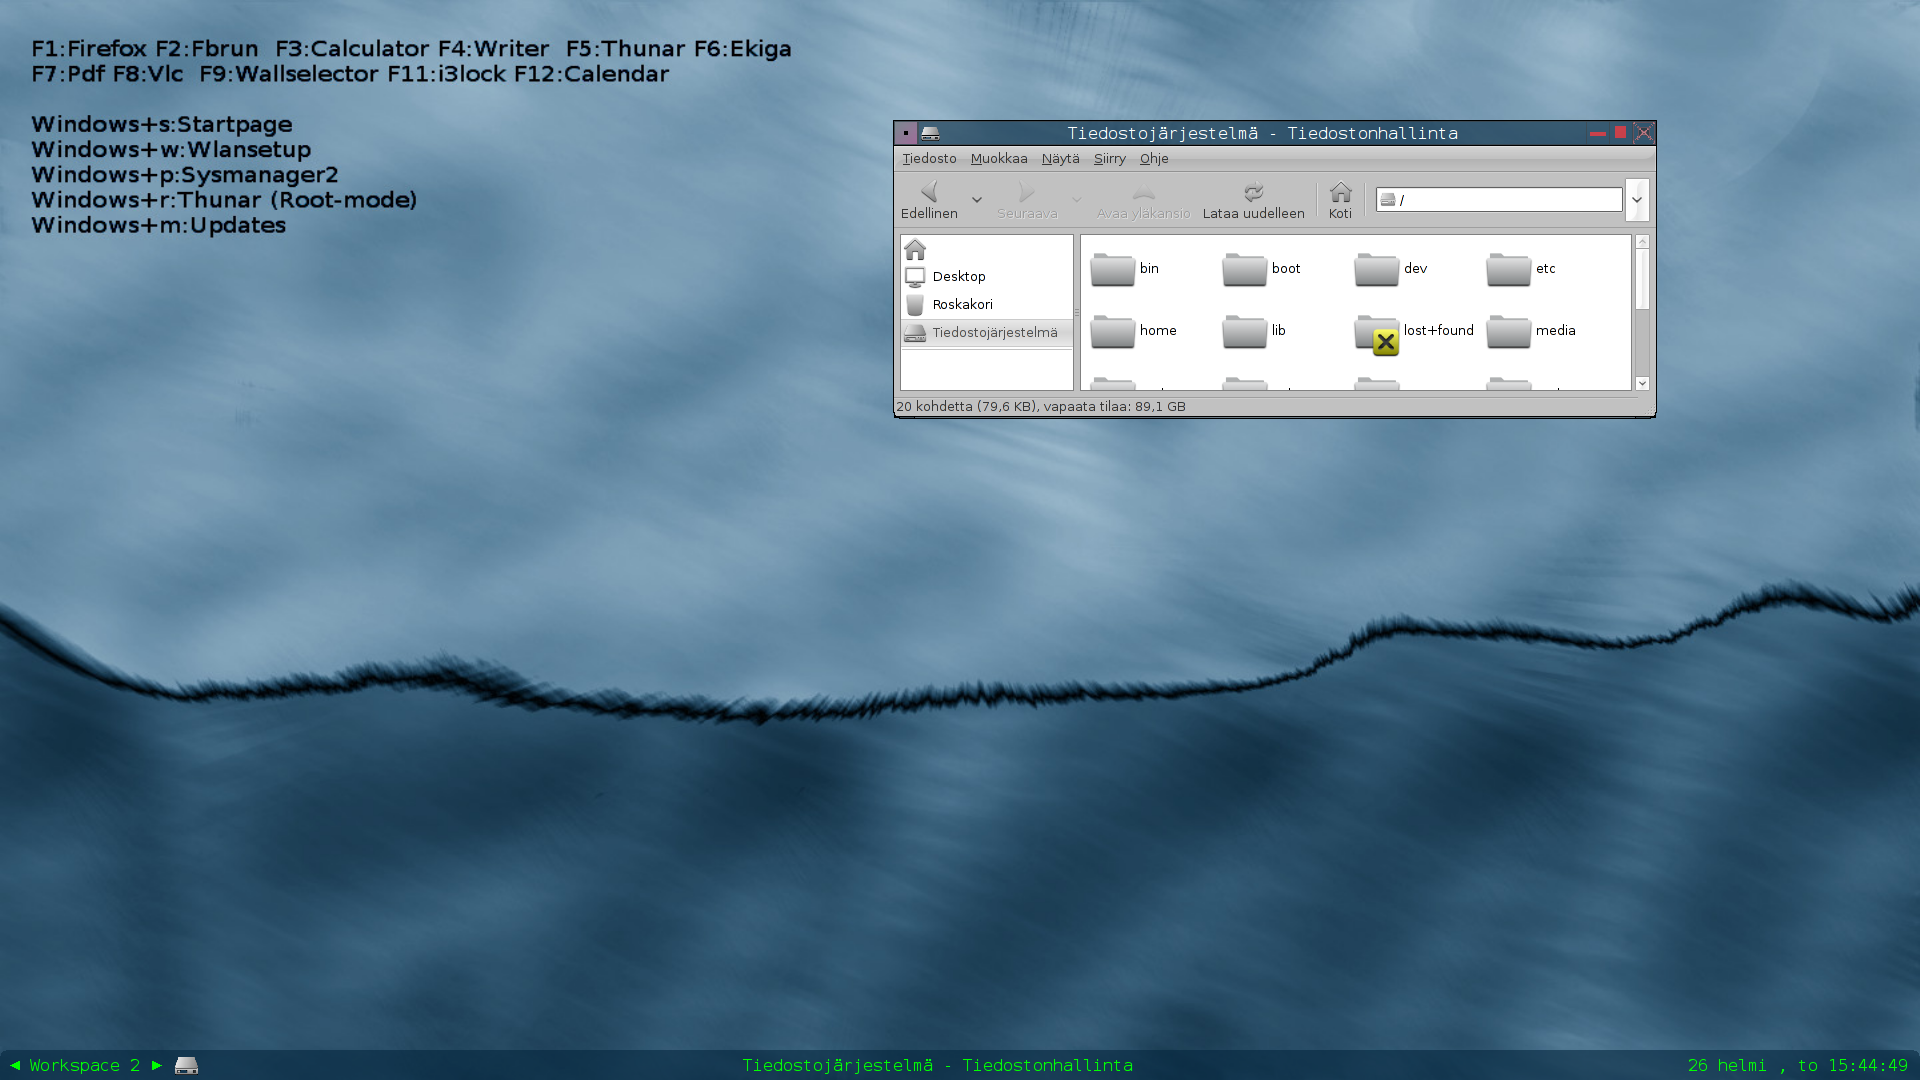 Audax 0.1.4 desktop with an alternative outlook.